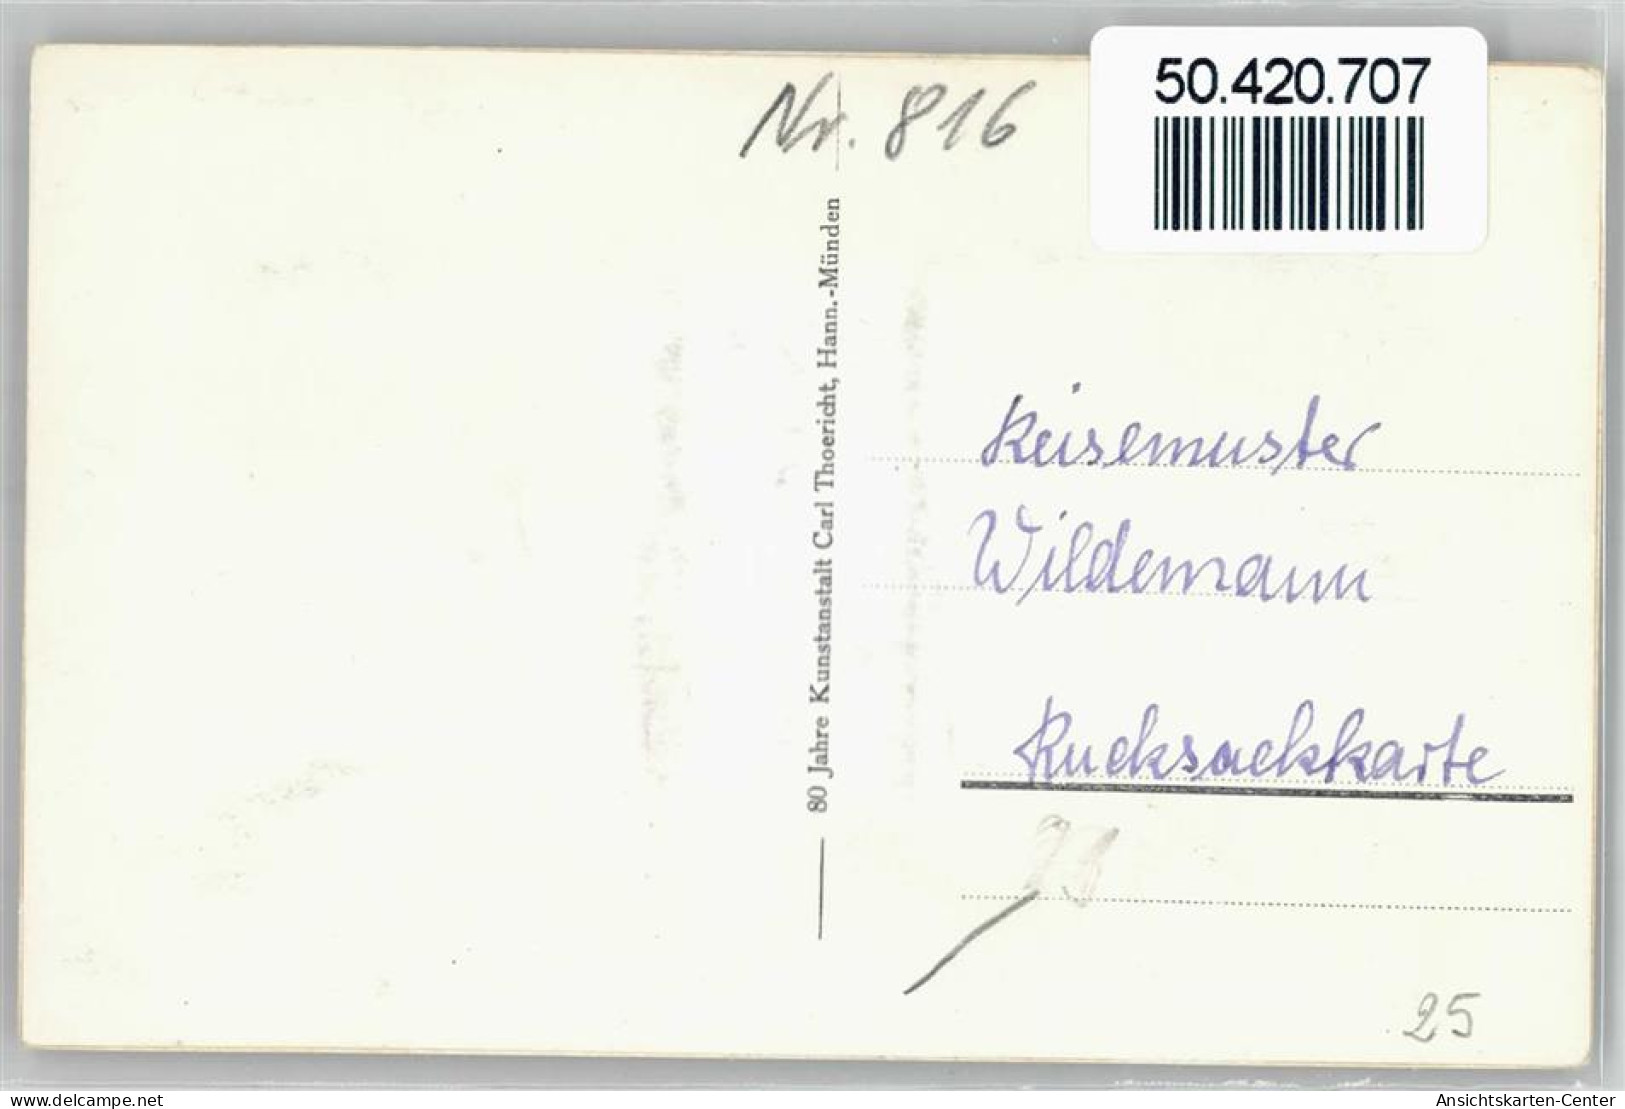 50420707 - Wildemann - Wildemann